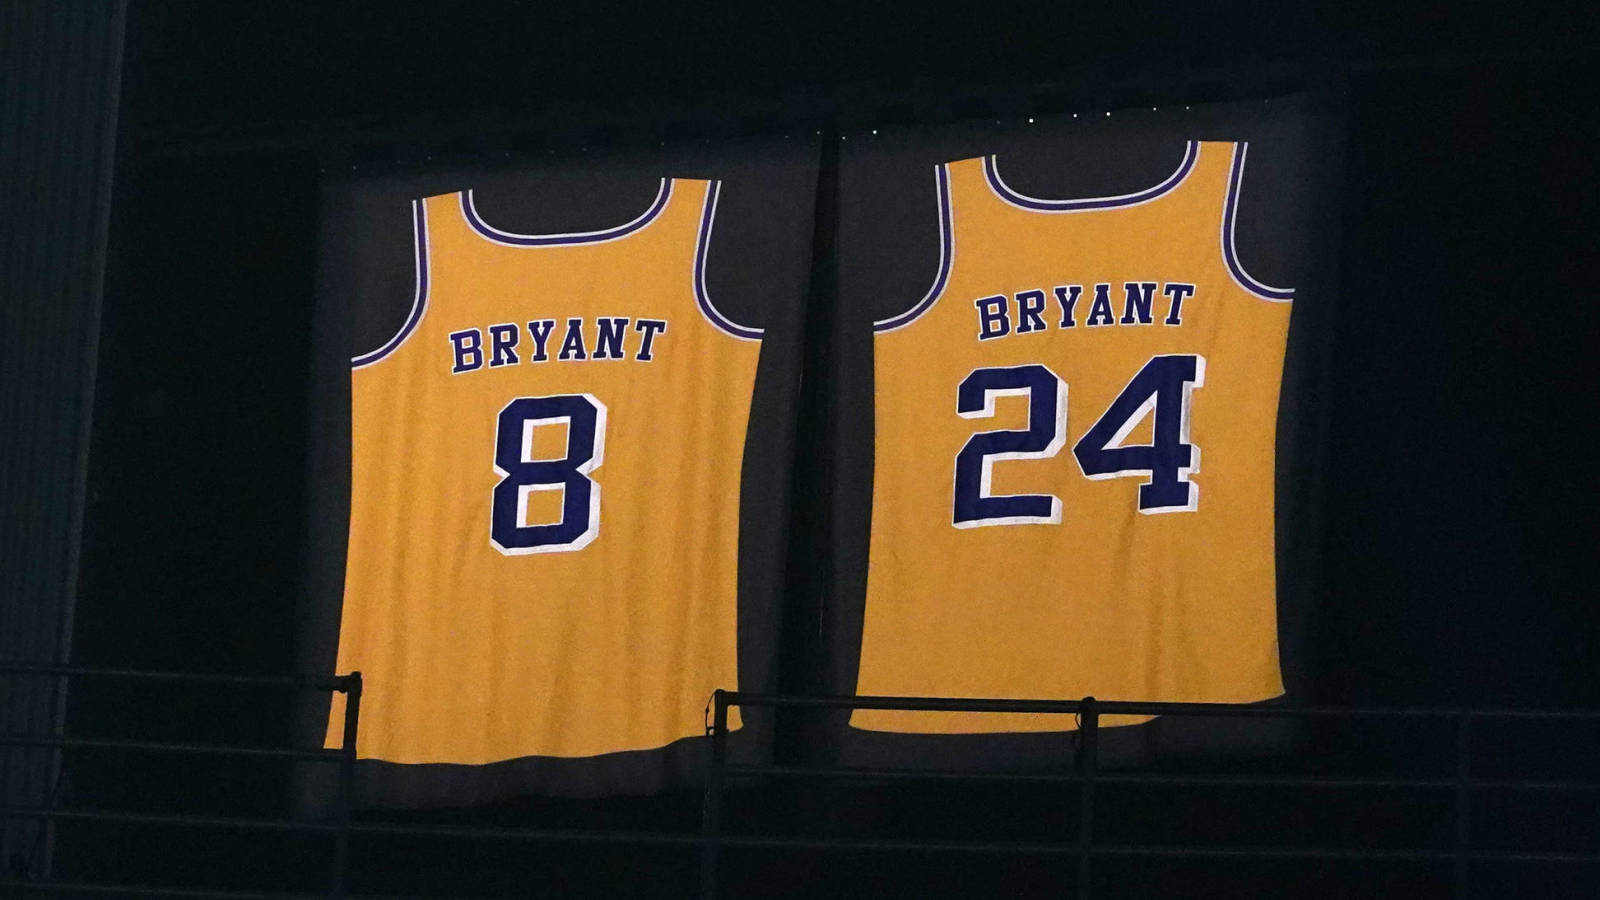 Vanessa Bryant posts touching tribute on anniversary of Kobe's jersey retirement